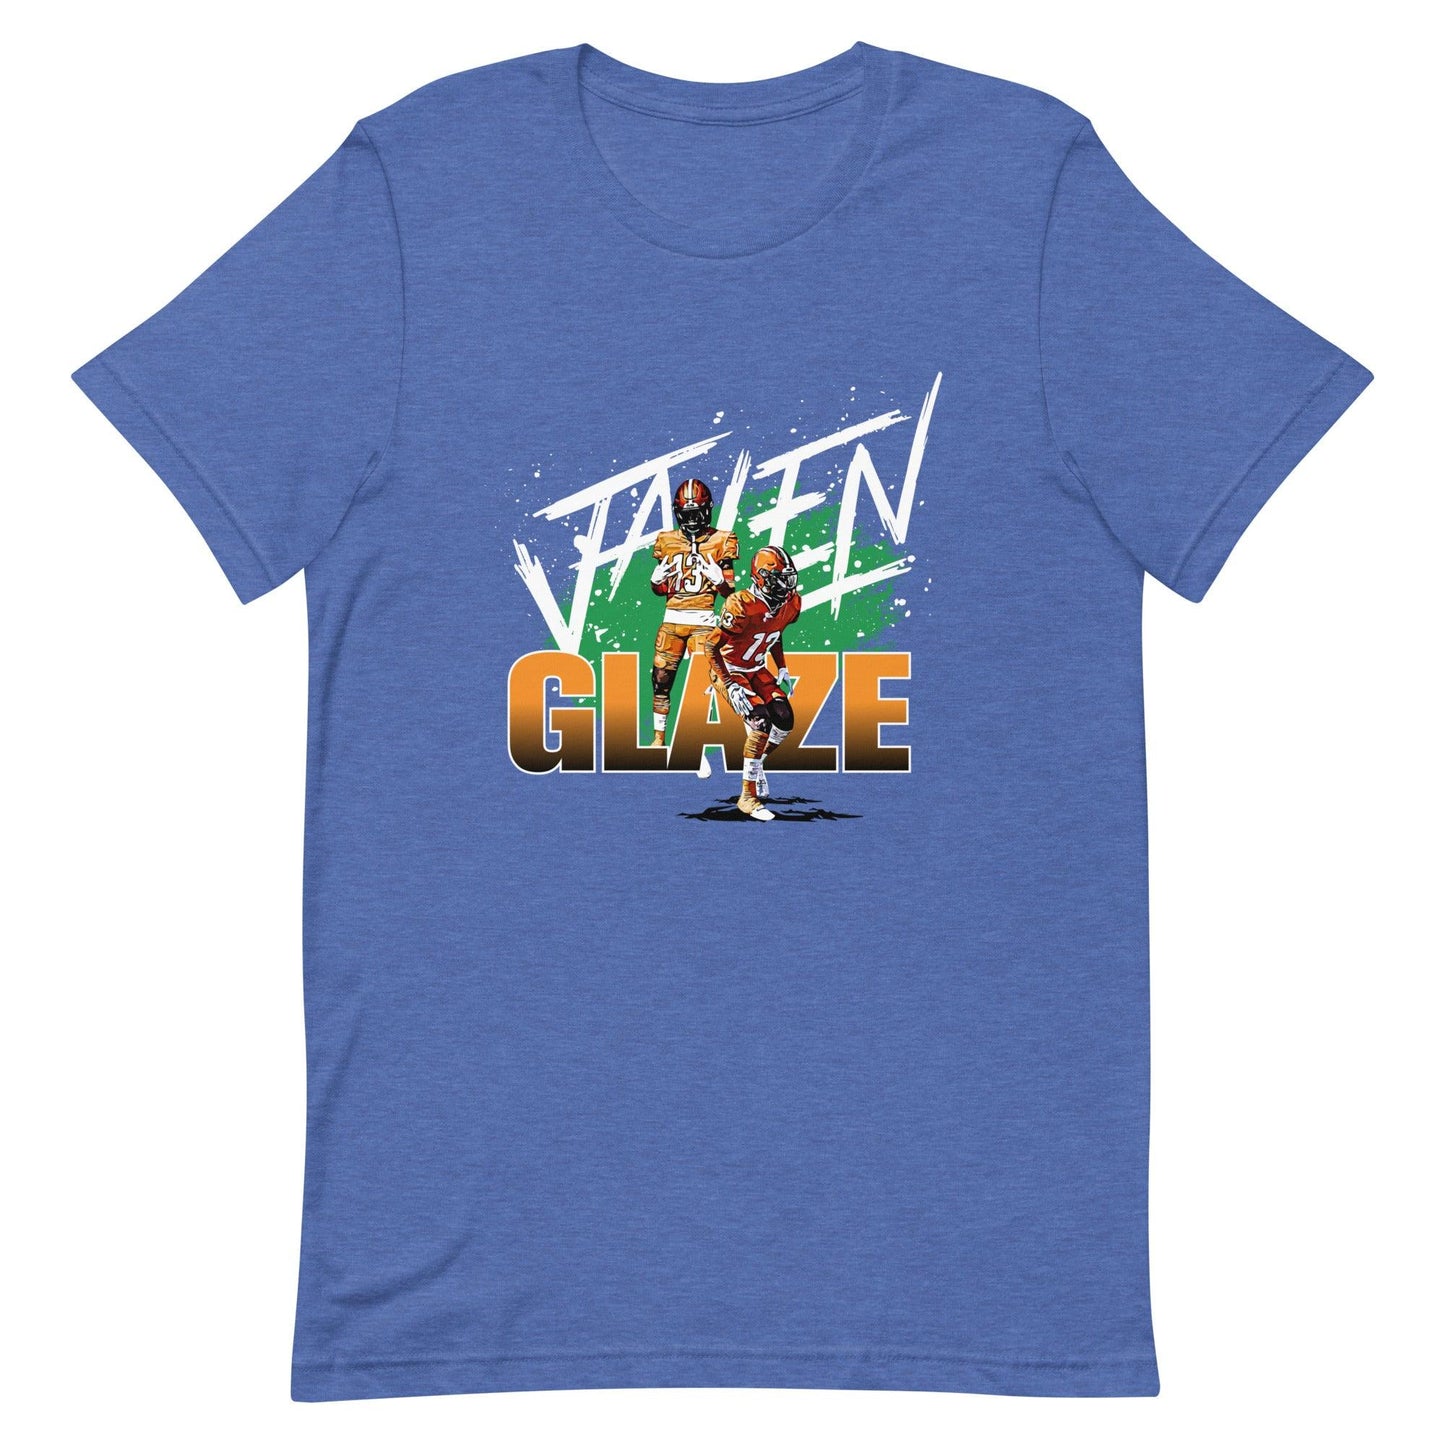 Jalen Glaze "Gameday" t-shirt - Fan Arch